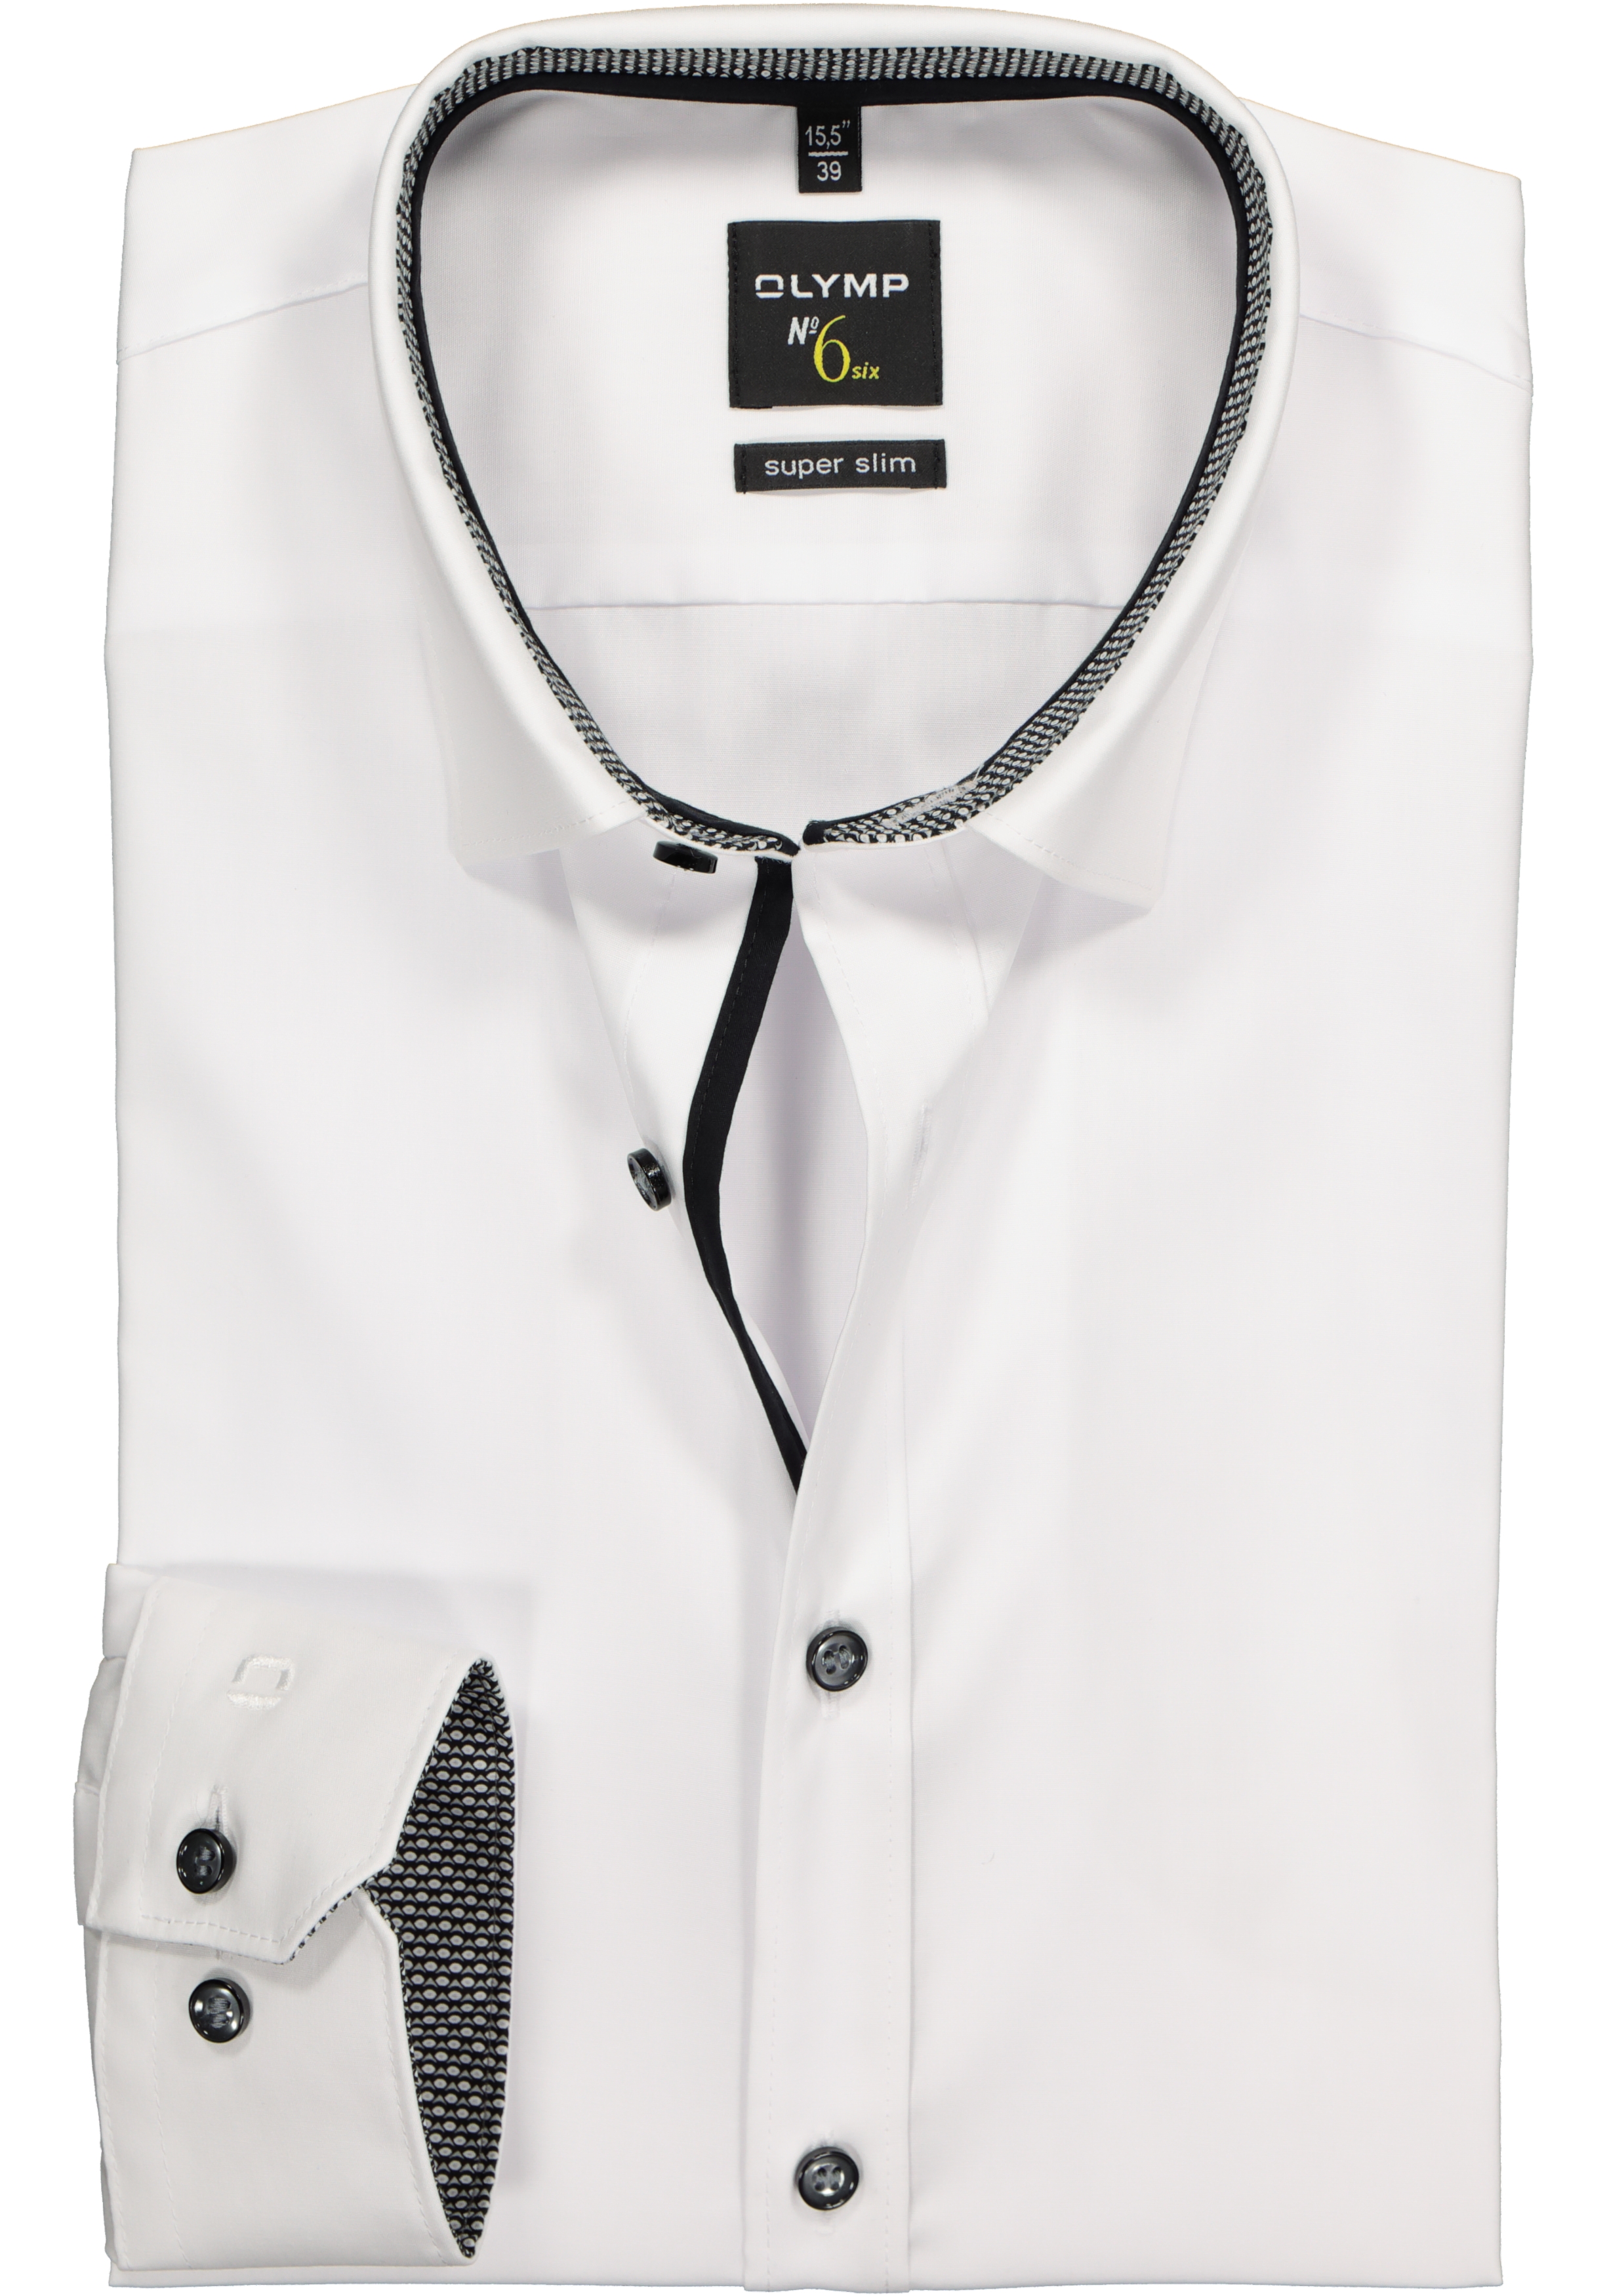 Ritmisch Horzel Omleiding OLYMP No. Six super slim fit overhemd, wit (zwart contrast) - Shop de  nieuwste voorjaarsmode